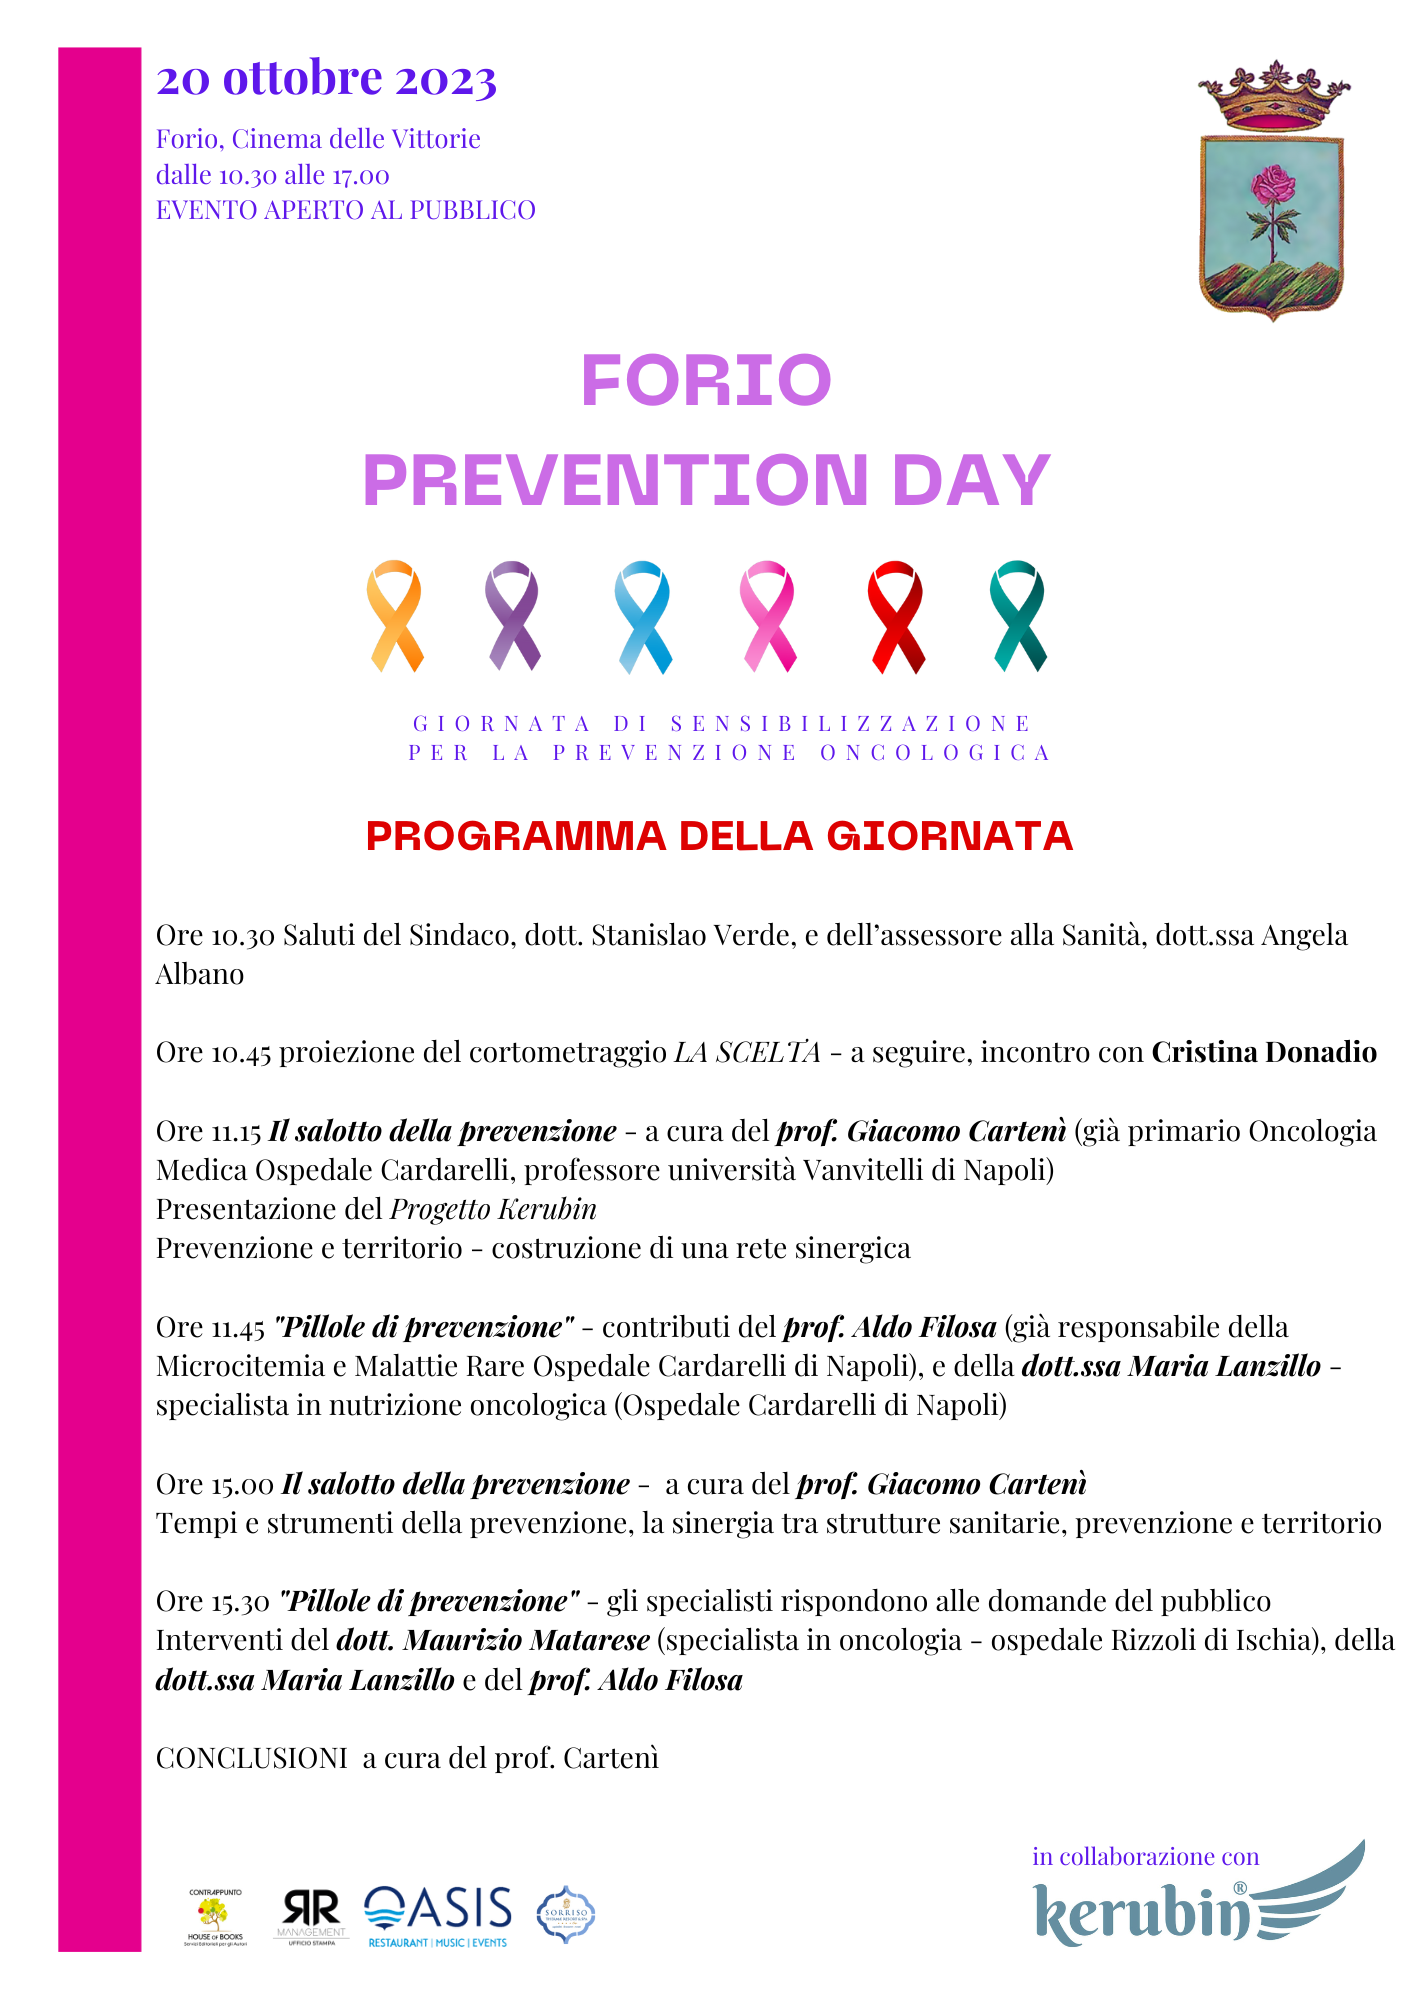 Forio prevention day